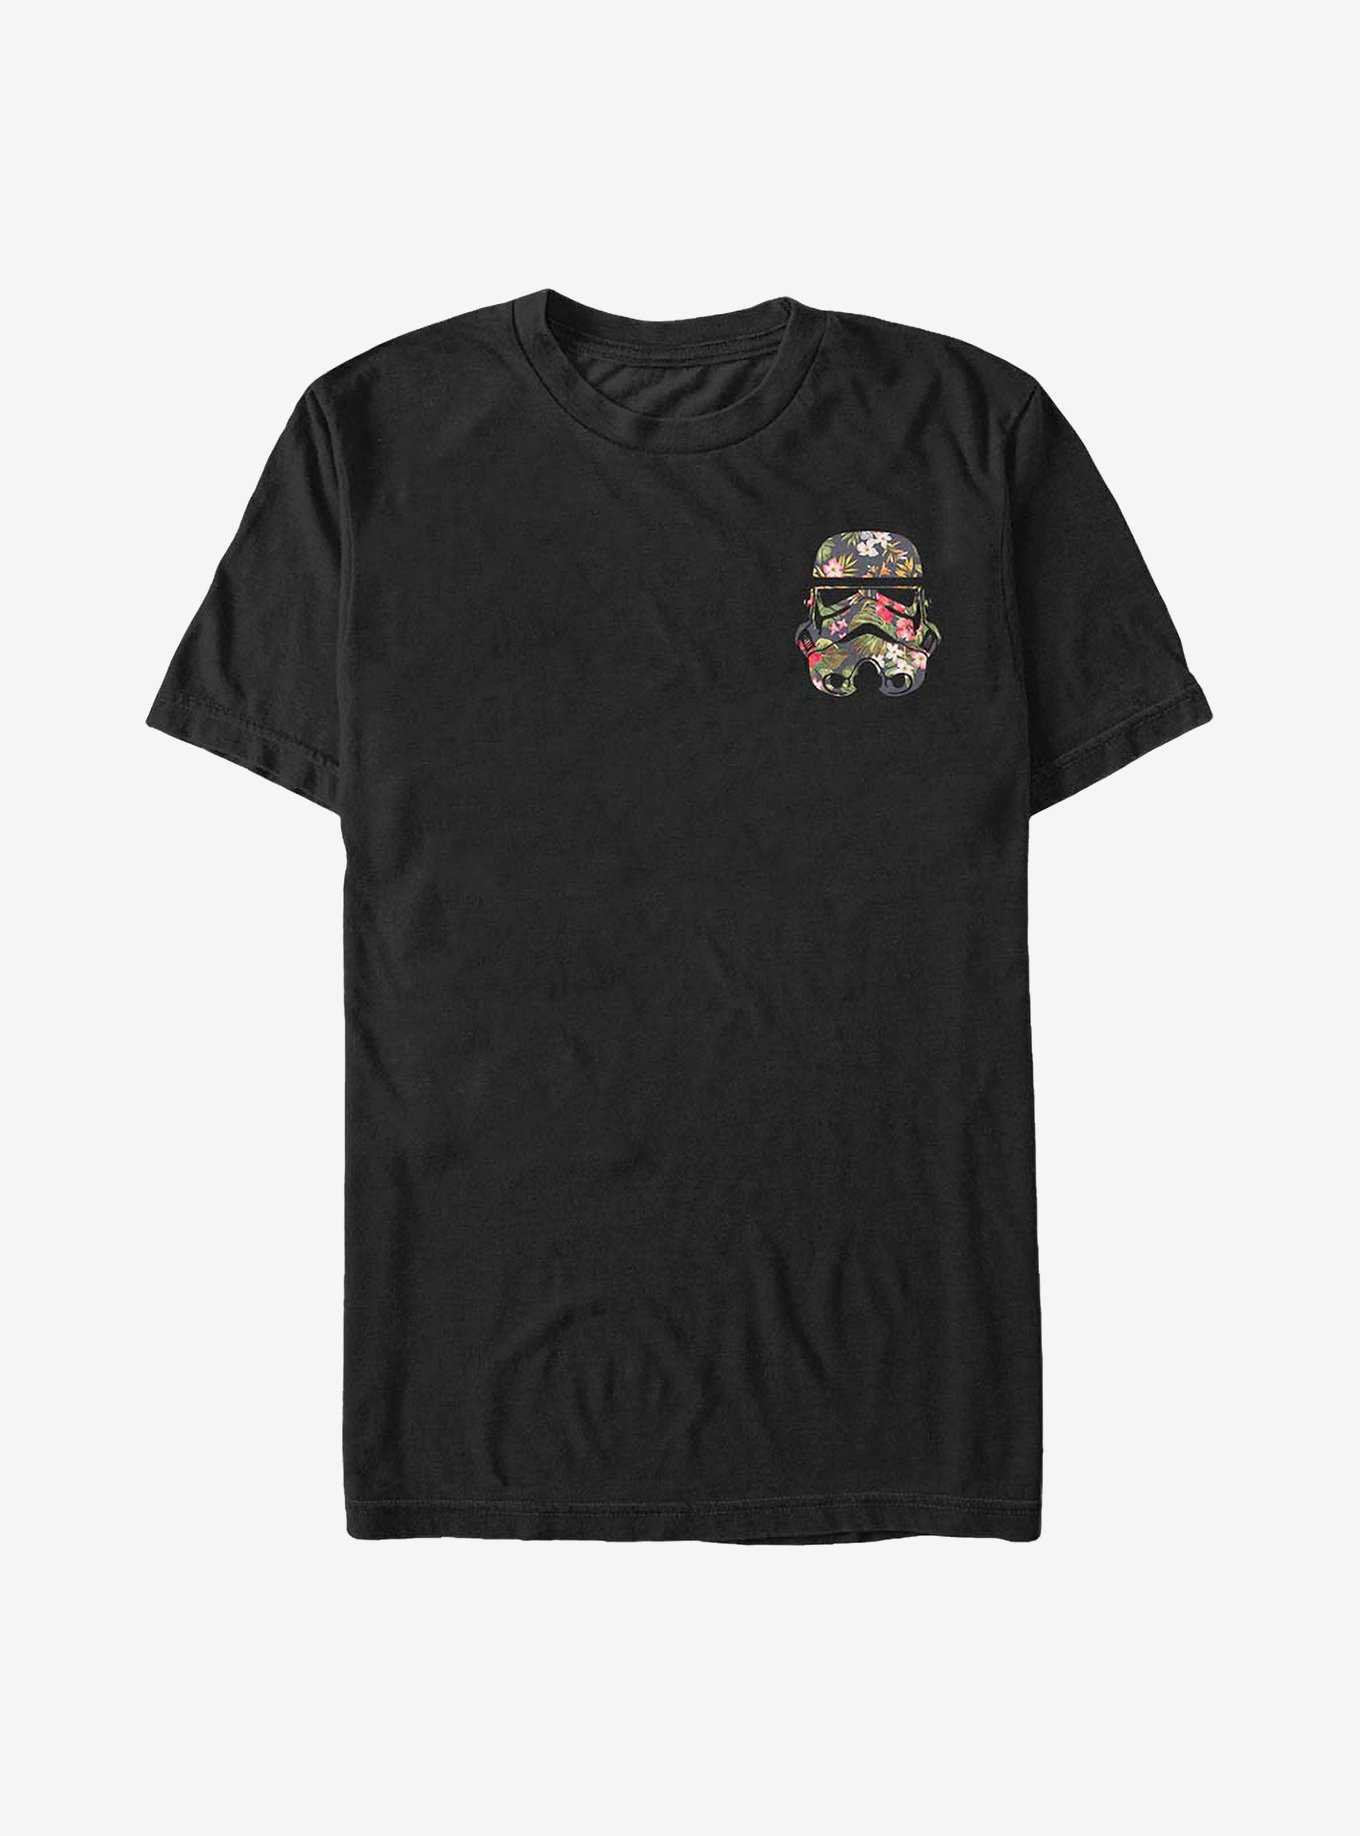 Star Wars Floral Badge Trooper T-Shirt, , hi-res